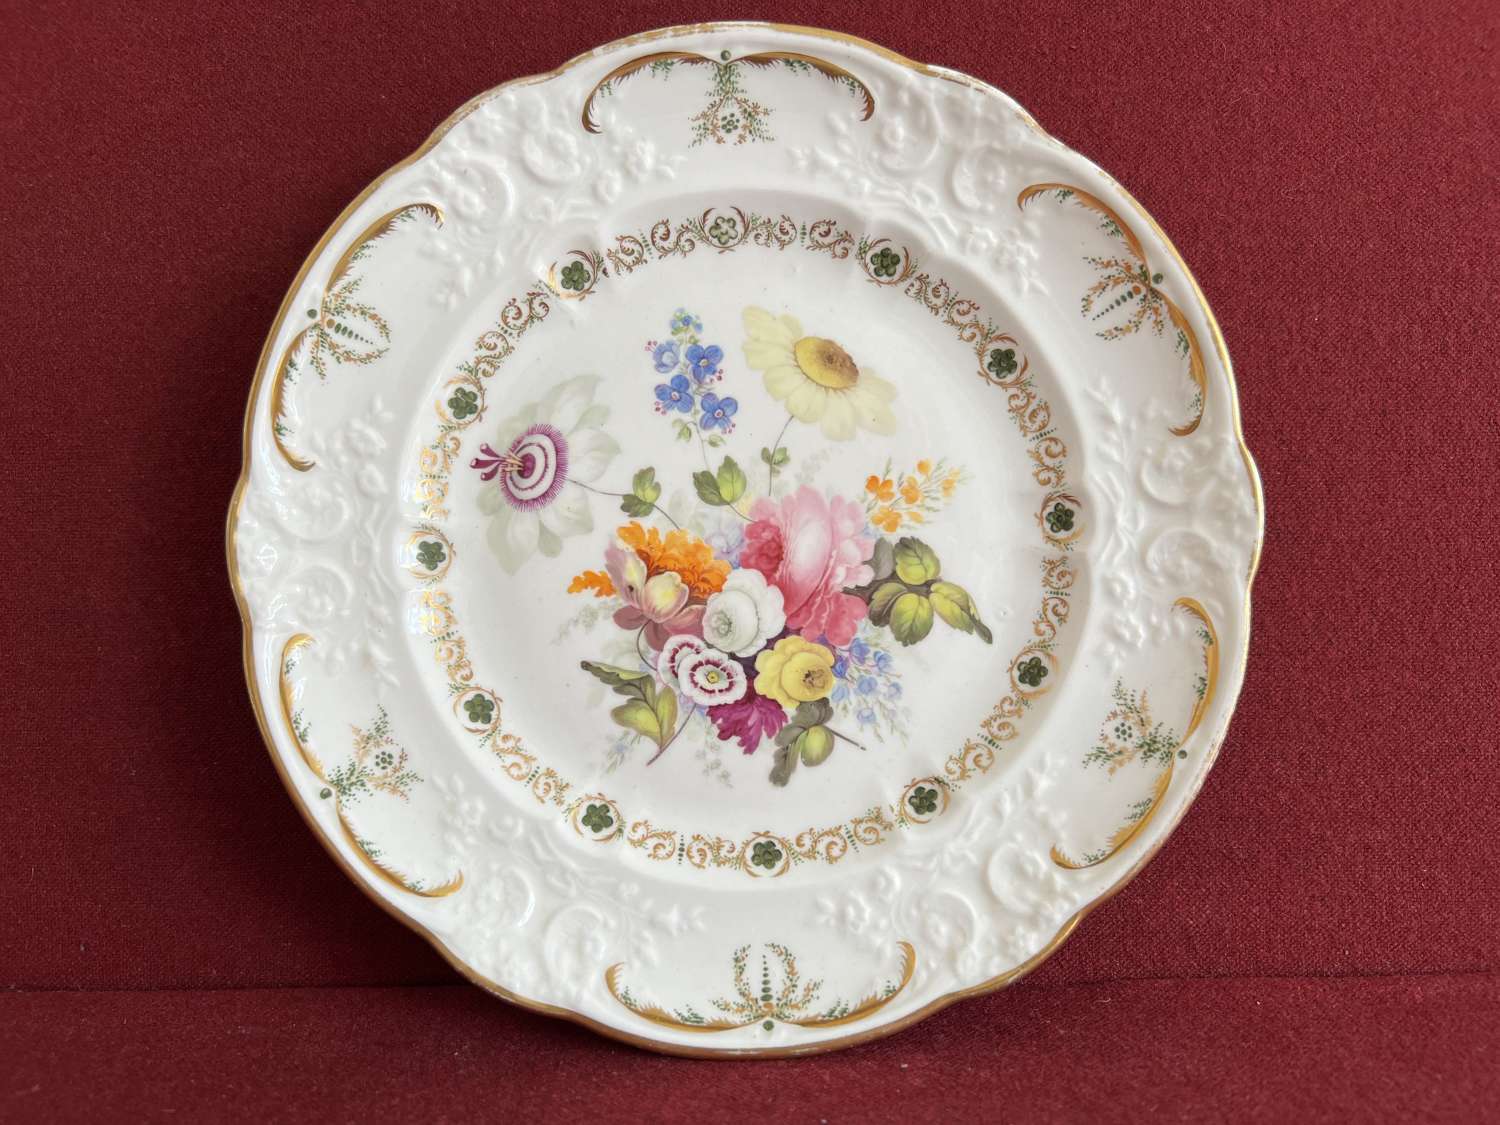 A Swansea porcelain plate c.1814-1822